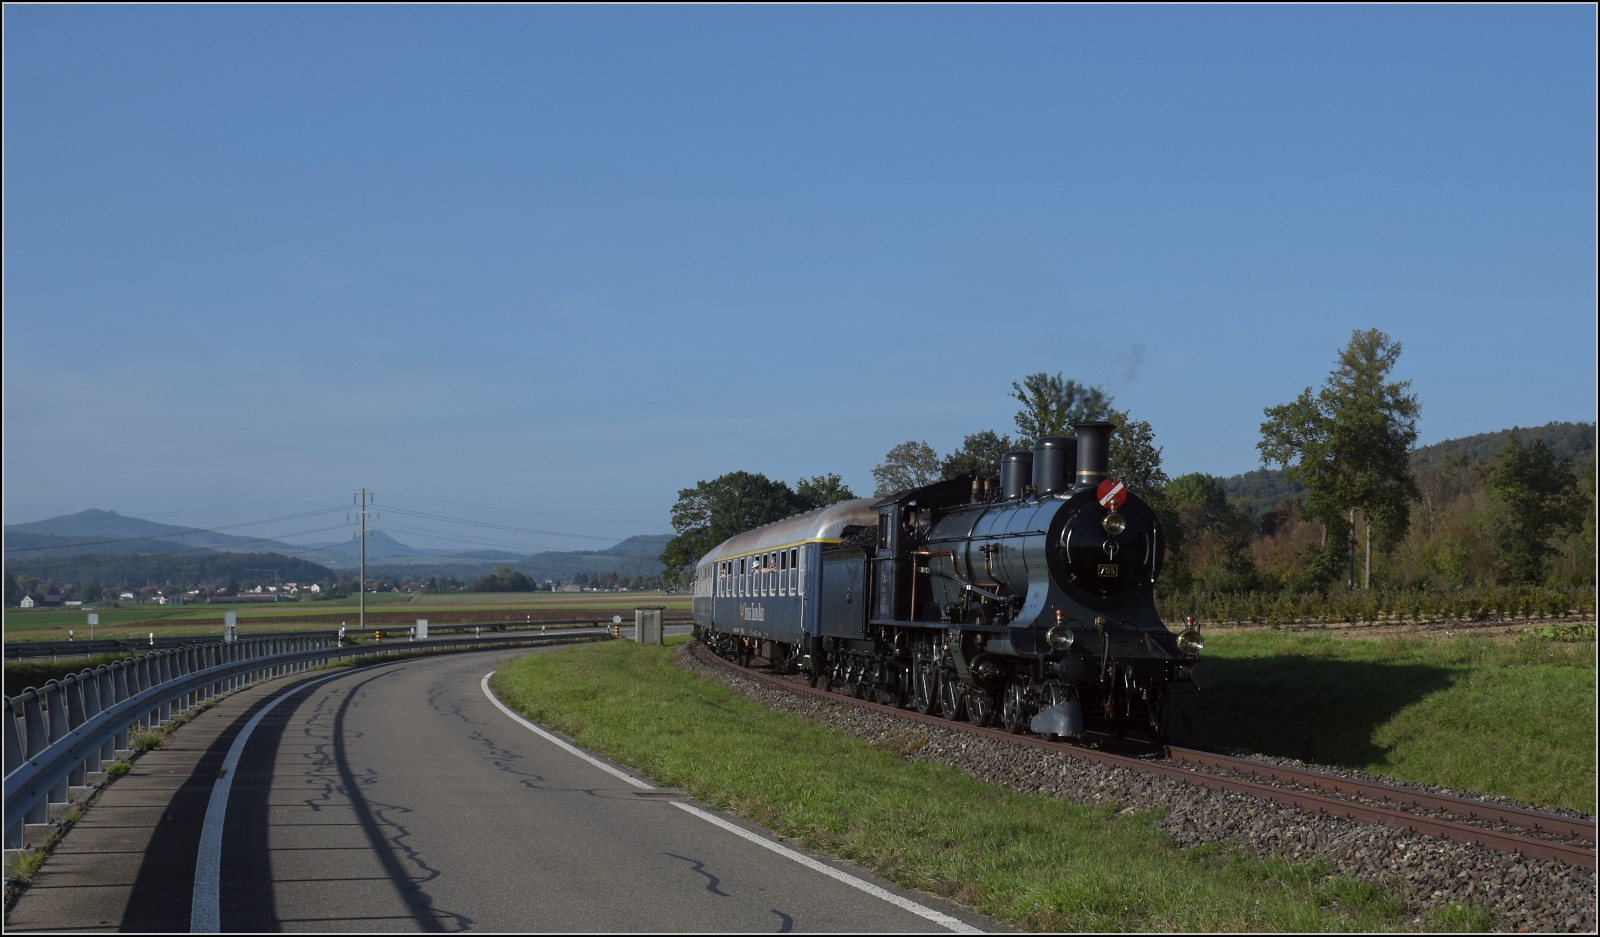 A 3/5 auf dem Schweizer Bhnle.

A 3/5 mit dem Swiss Train Bleu auf dem Weg nach Hemishofen. September 2023.